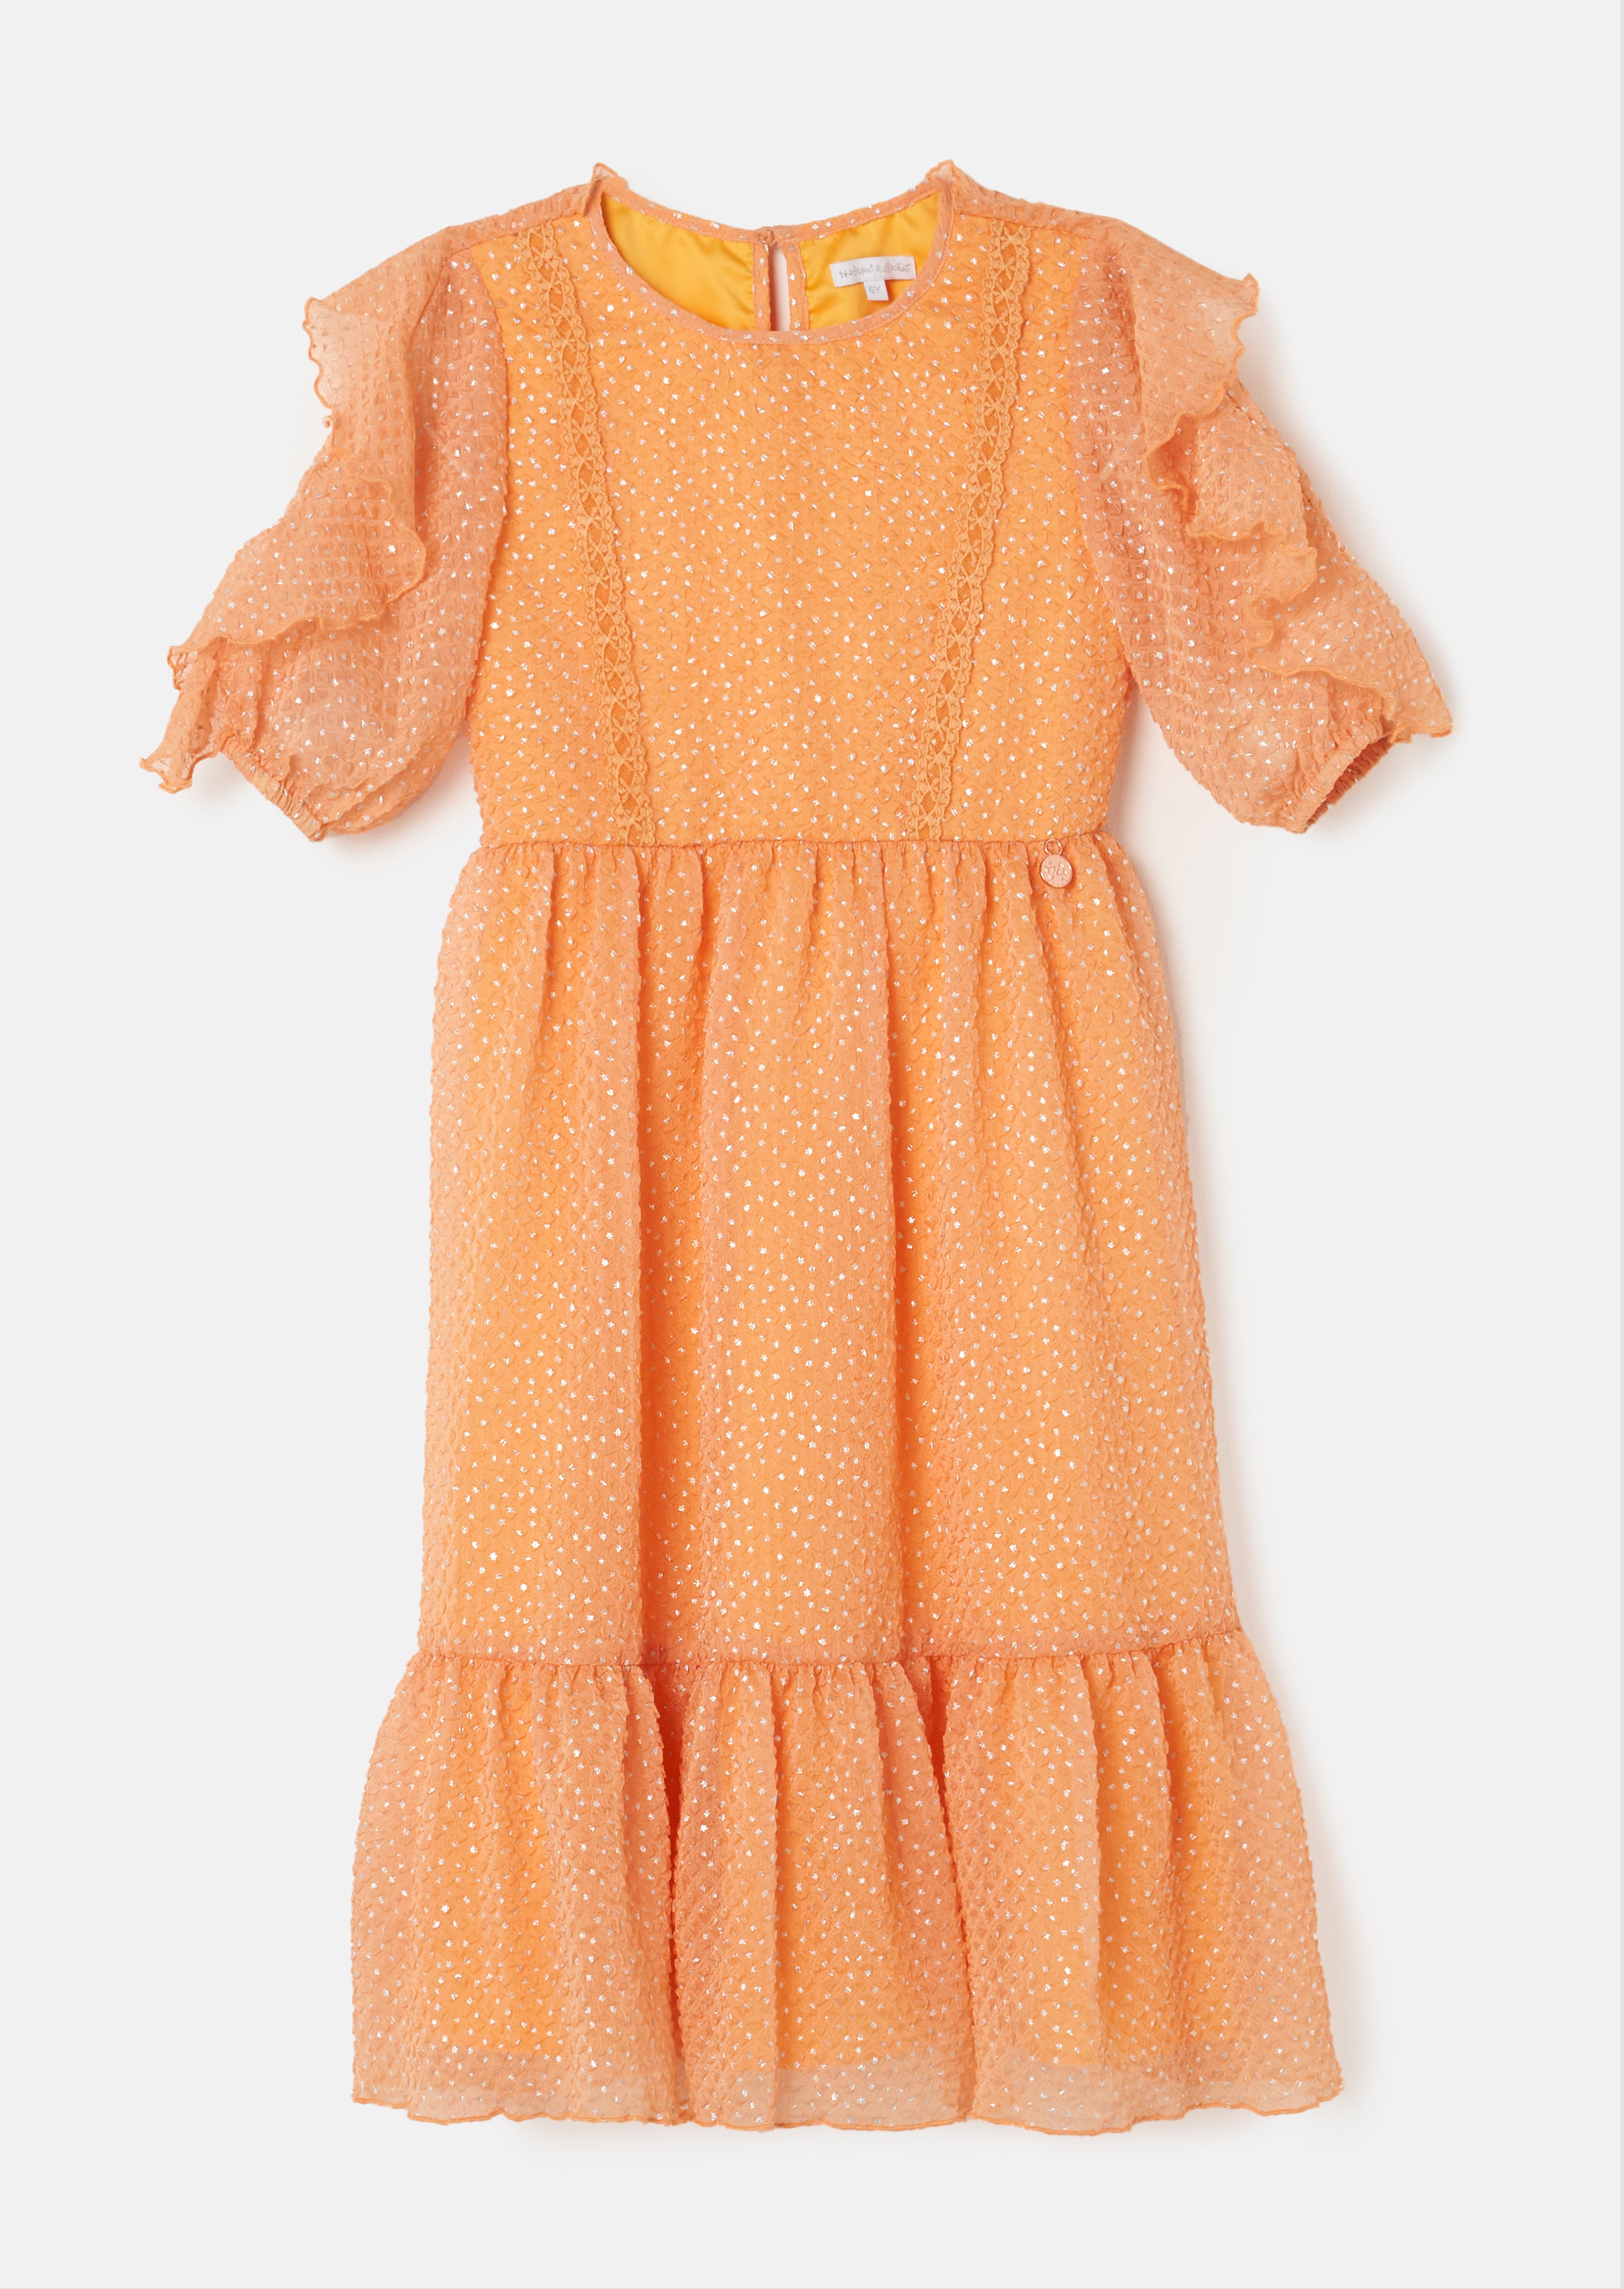 Orange Ikat Halter Dress | Frocks for girls, Girls frock design, Cotton  frocks for kids